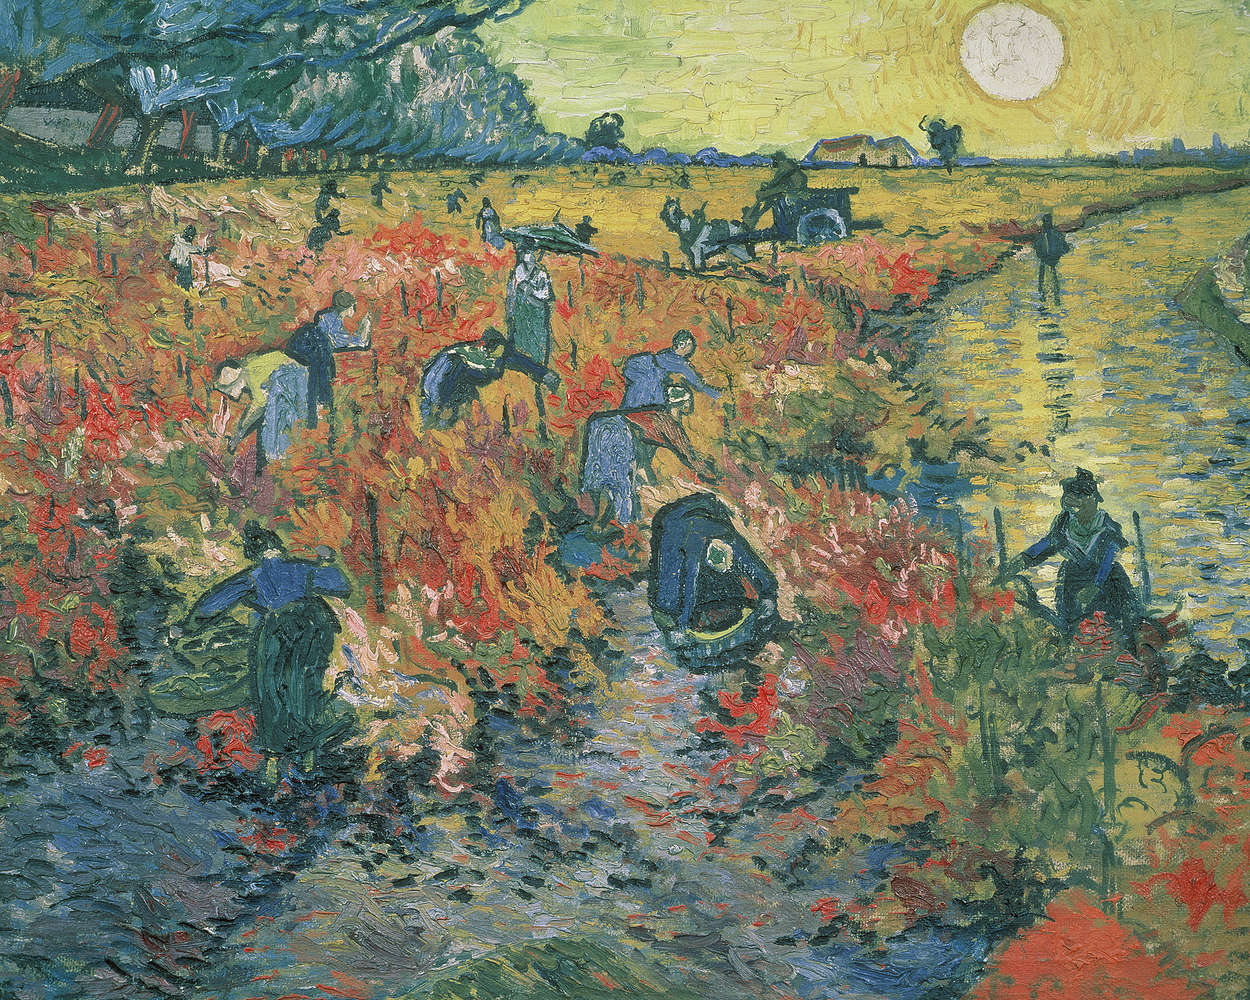             Fototapete "Rote Weinberge" von Vincent van Gogh
        